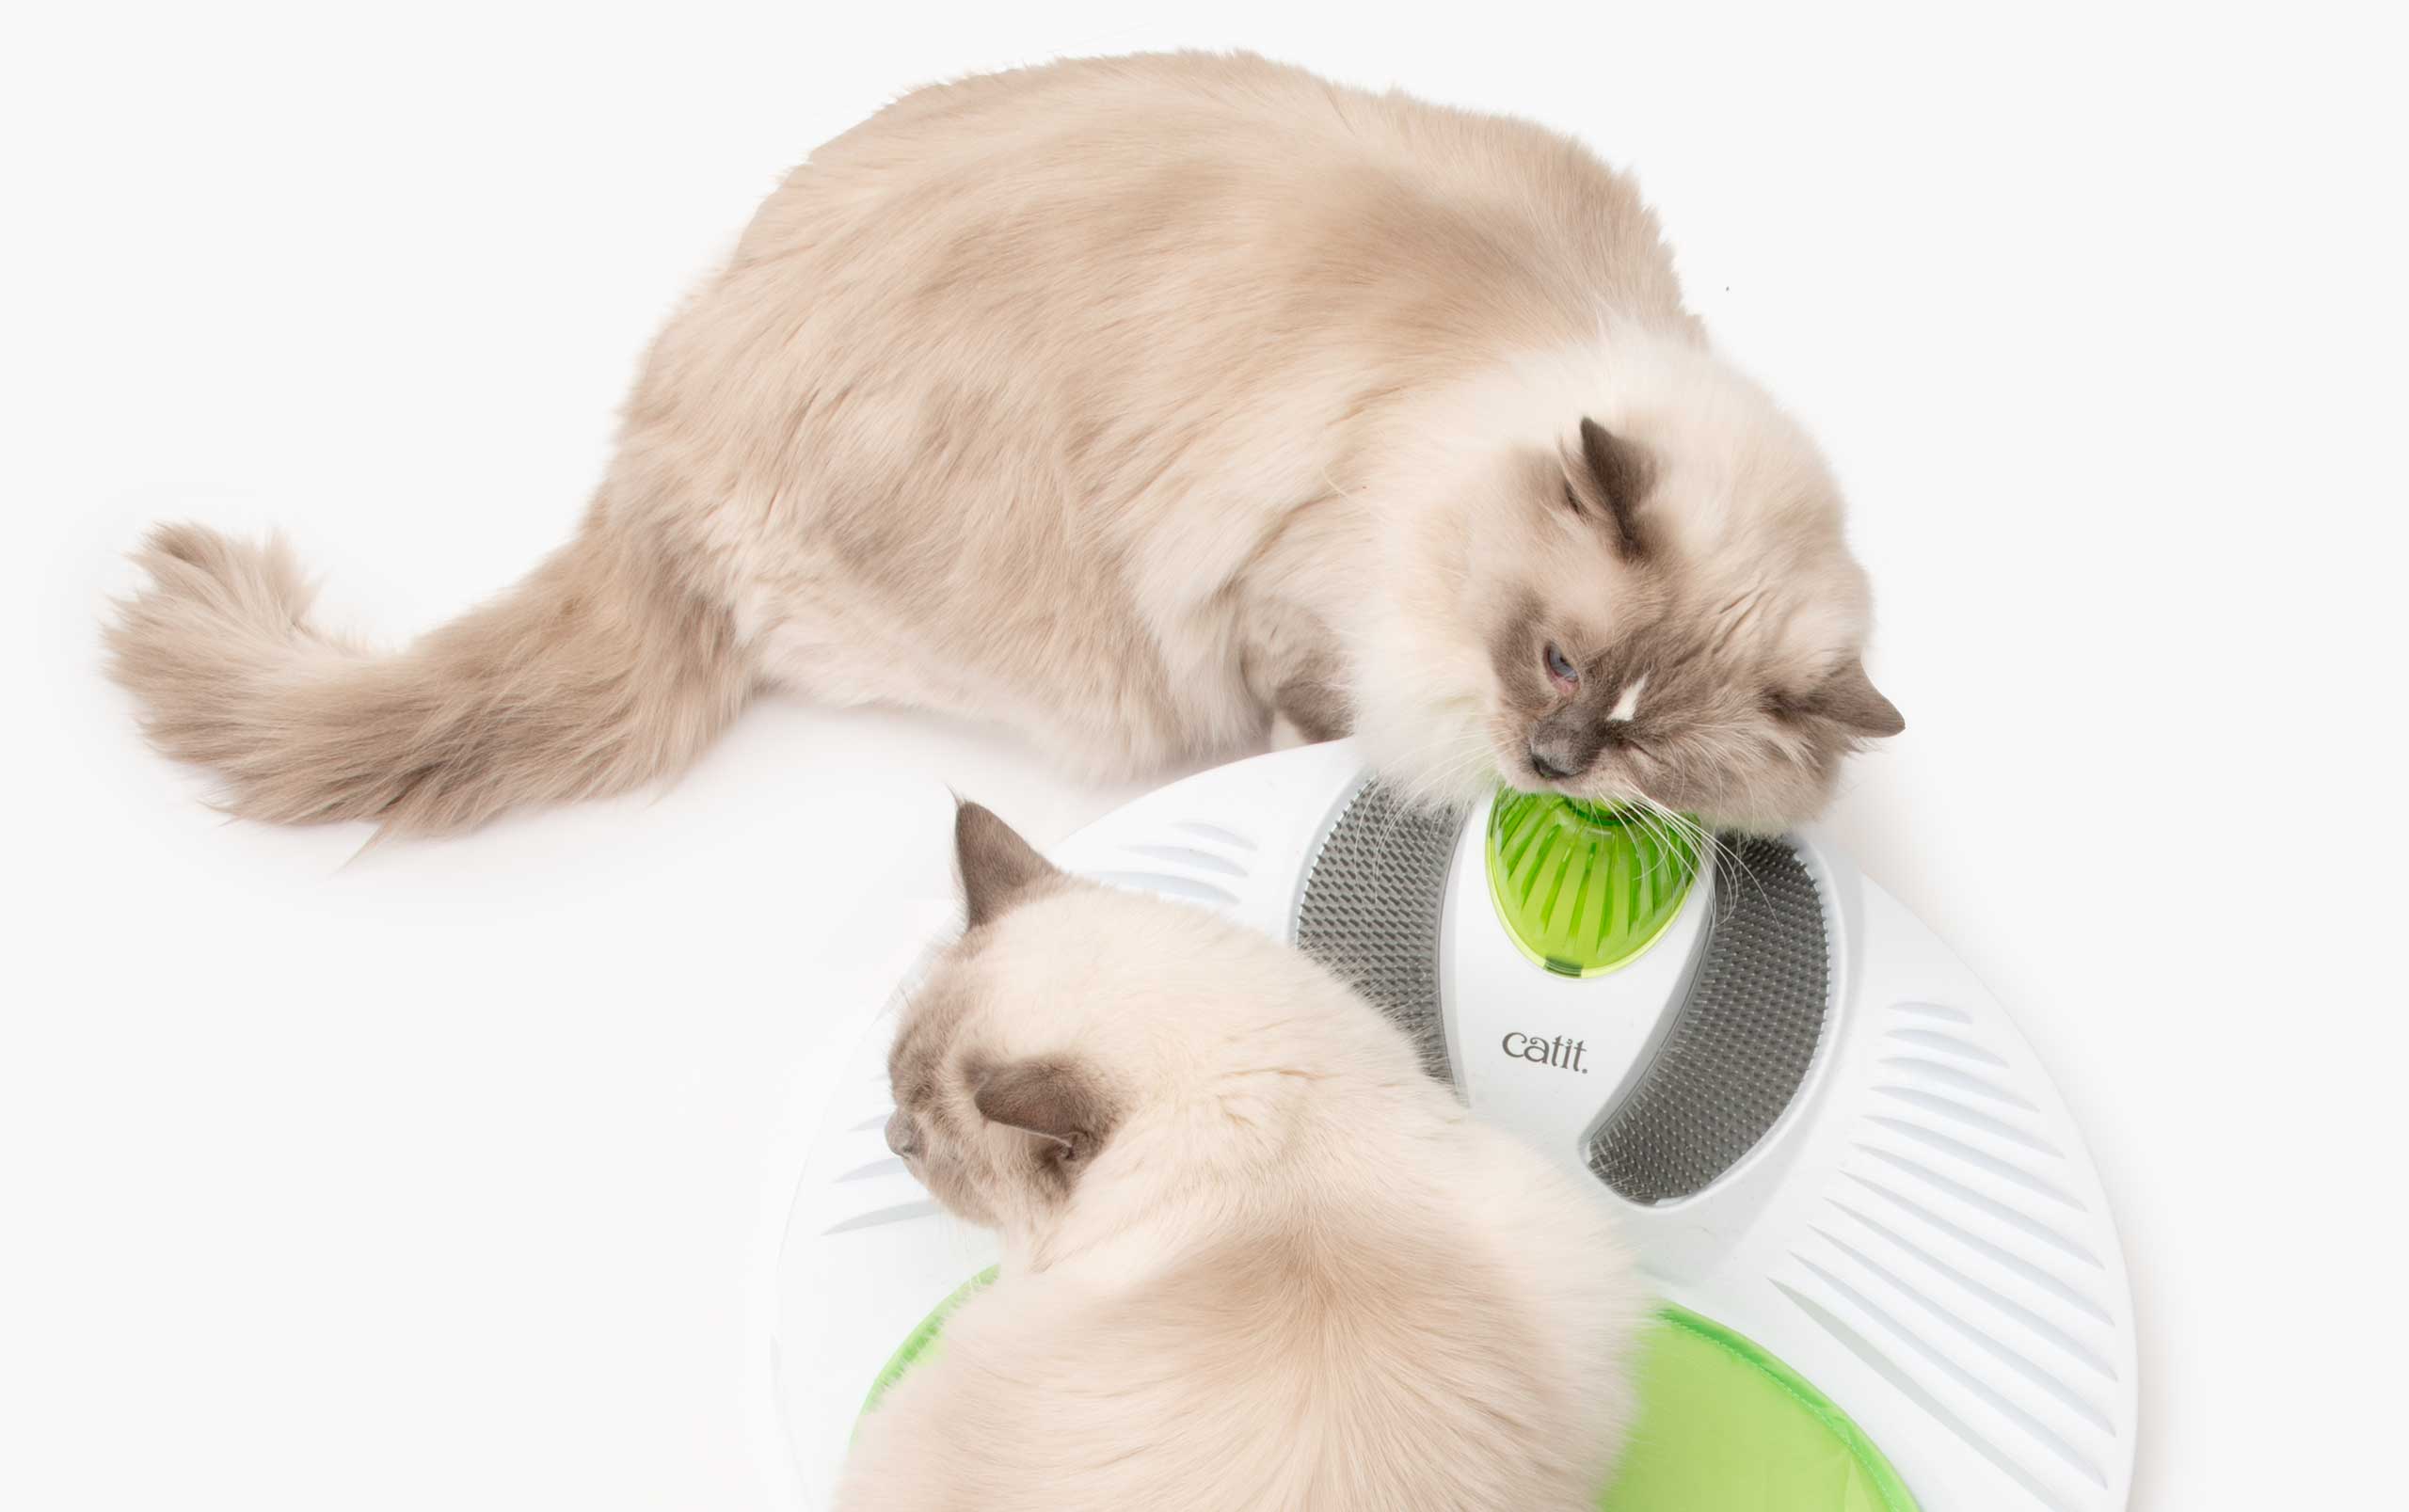 Aplicar catnip para que los gatos interactúen más con los juguetes y rascadores